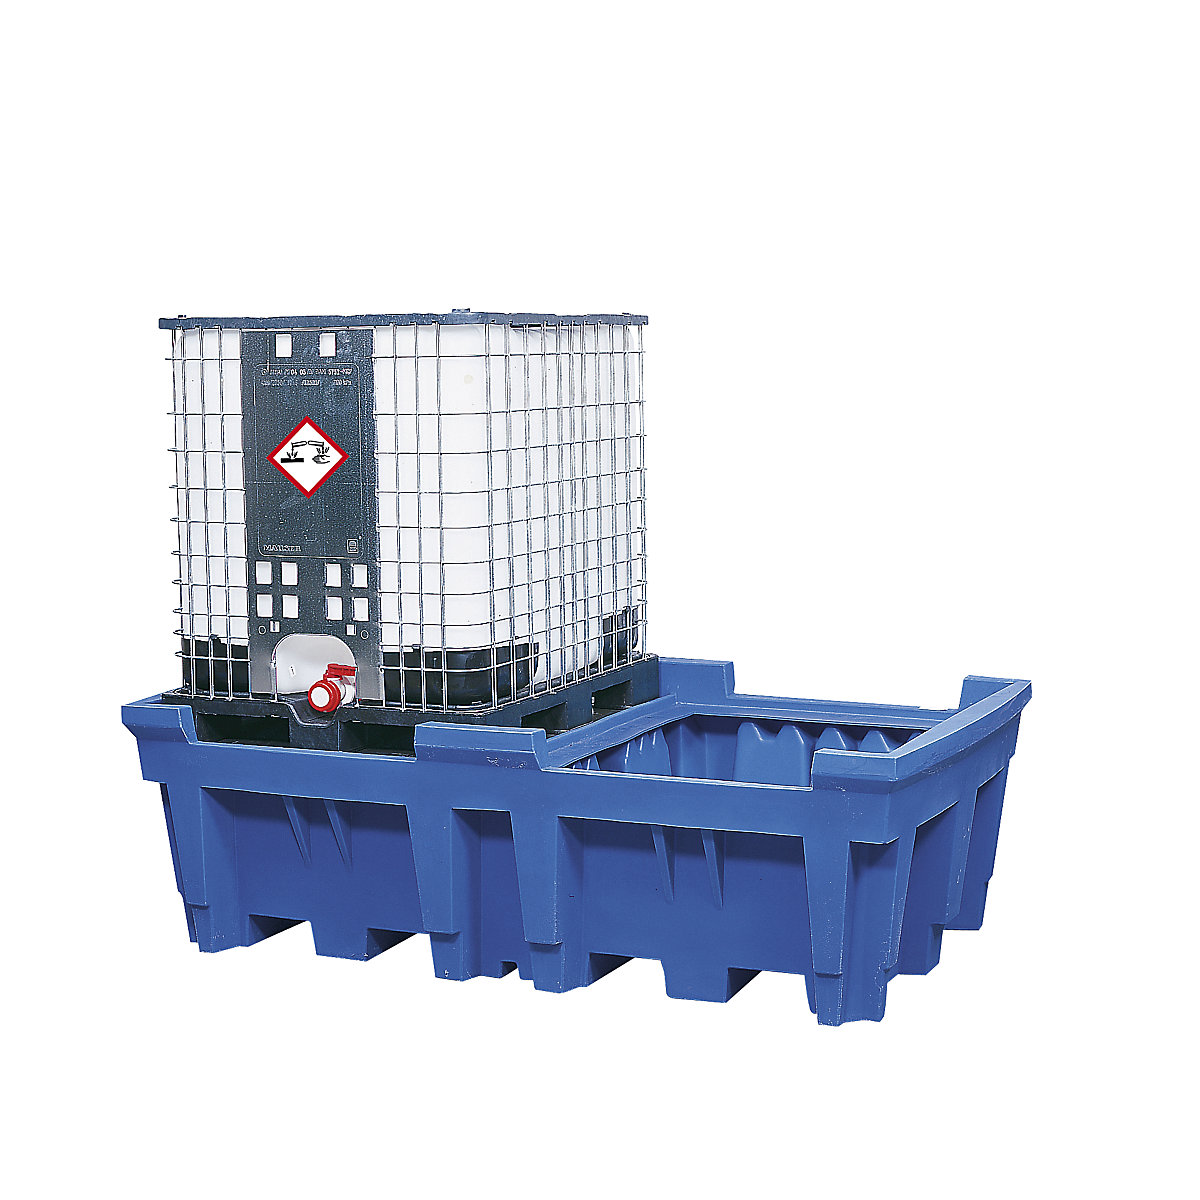 PE-Auffangwanne für Tankcontainer IBC/KTC, Auffangvolumen 1000 l, für 2 Container, ohne PE-Stellfläche